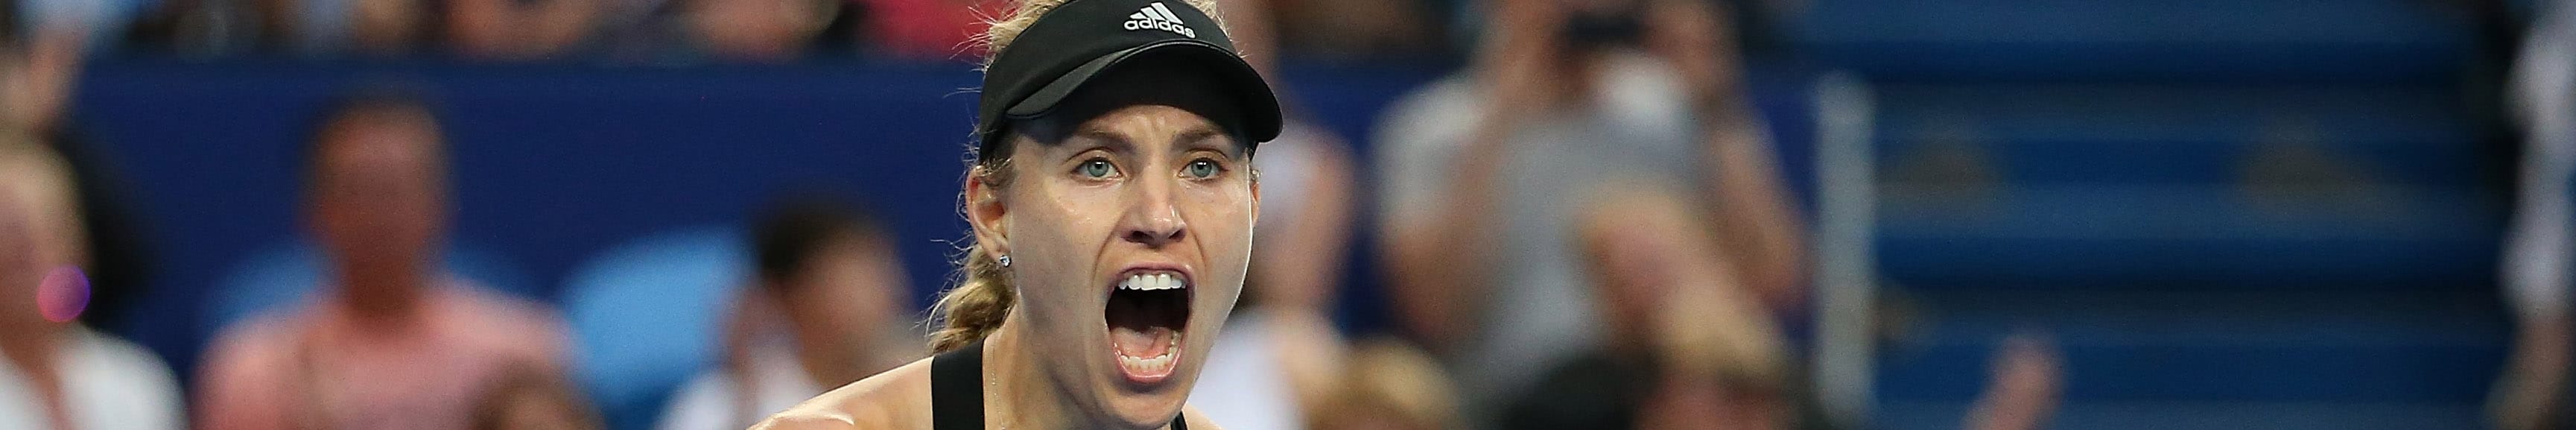 Angelique Kerber: Wieder Favoritin bei den Australian Open